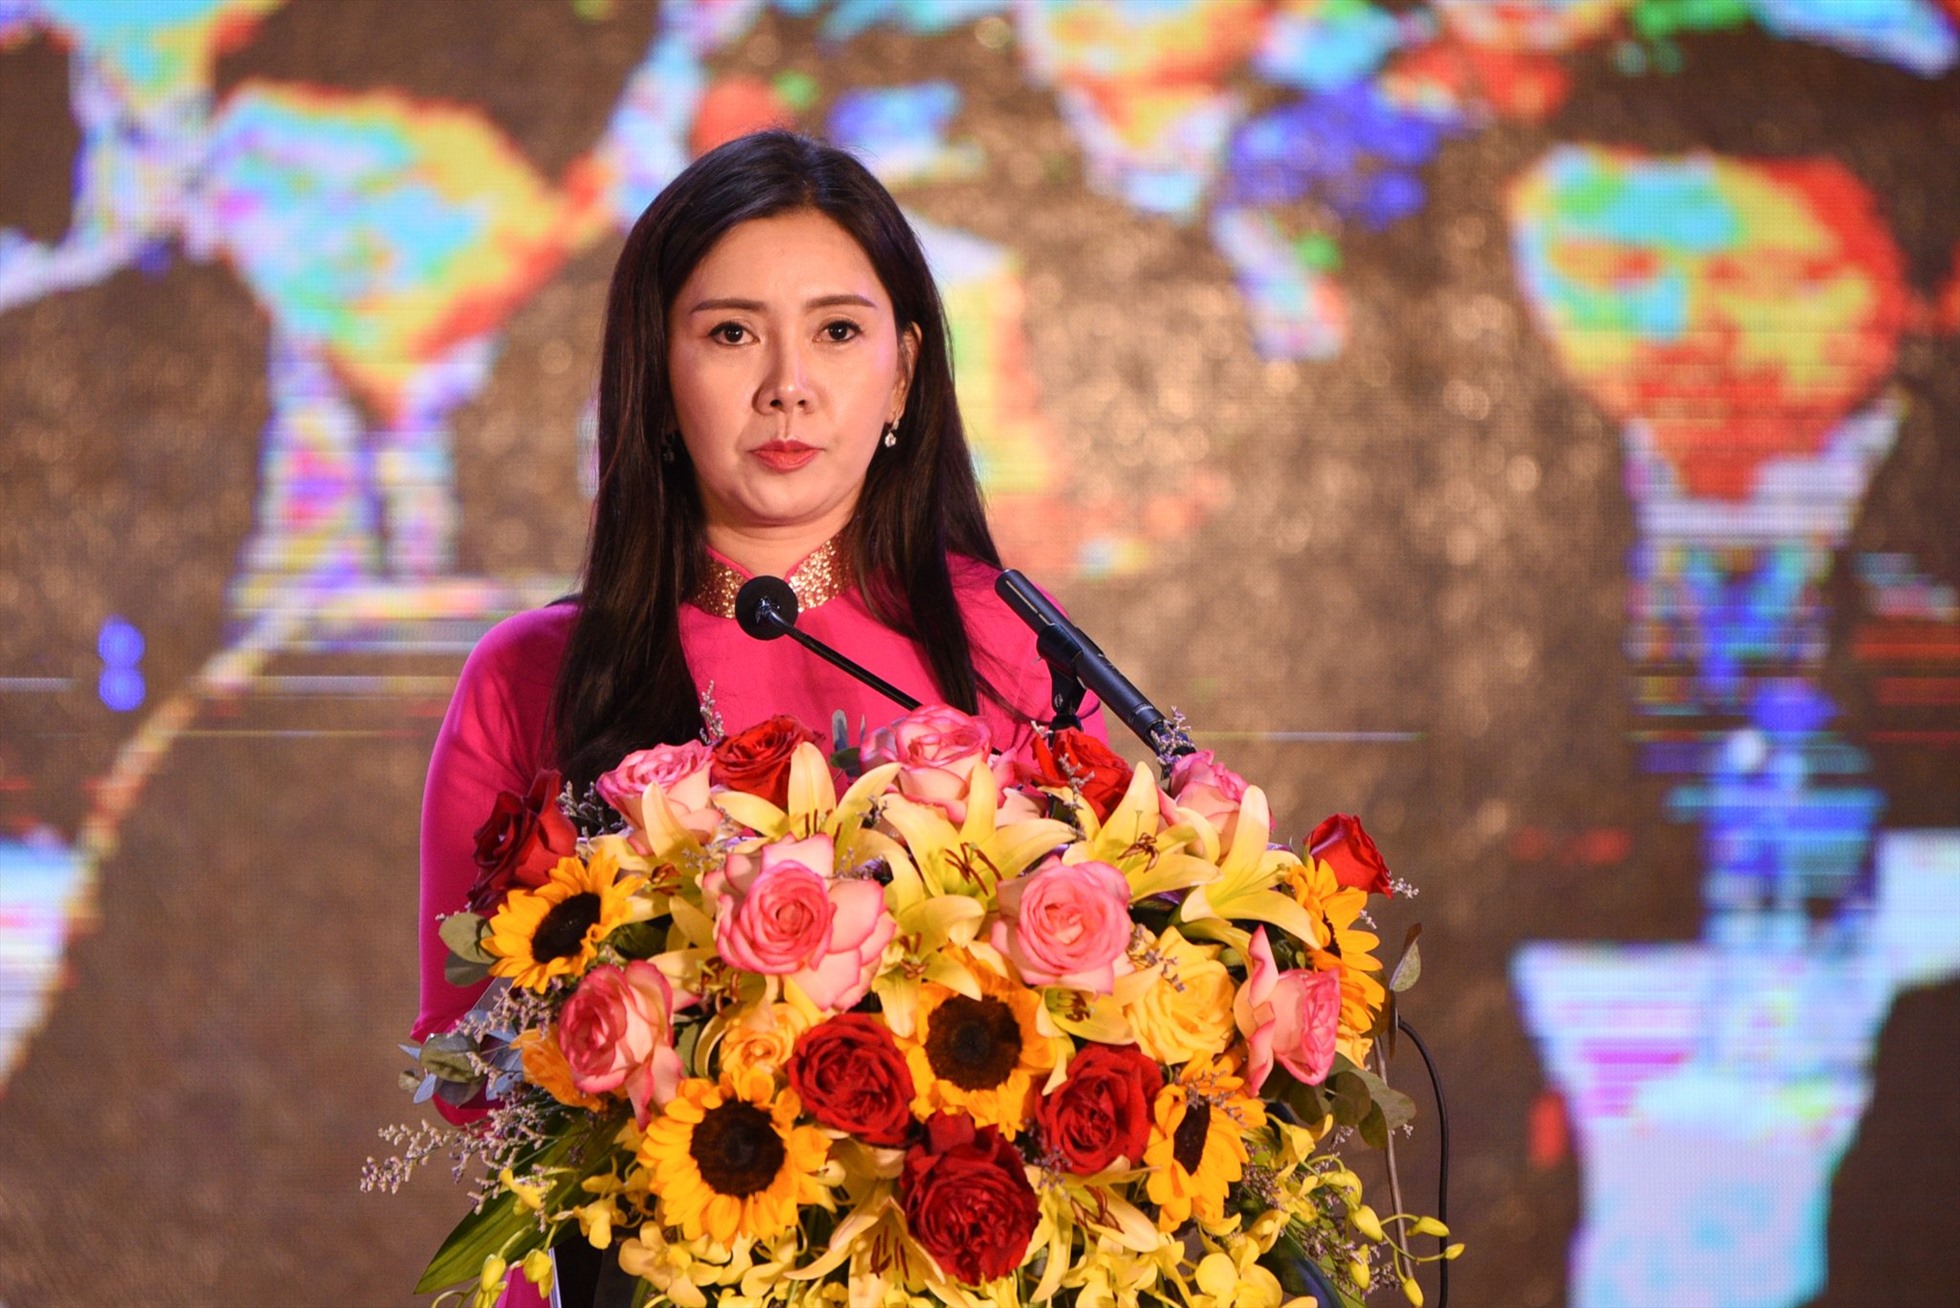 Phó chủ tịch UBND tỉnh Lạng Sơn cho rằng, Hội chợ thương mại quốc tế Việt - Trung 2022 sẽ là nhịp cầu giao lưu kinh tế, đầu tư, du lịch và dịch vụ giữa doanh nghiệp 2 nước, tạo thuận lợi thúc đẩy giao thương giữa tỉnh Lạng Sơn và tỉnh Quảng Tây nói riêng, giữa Việt Nam và Trung Quốc nói chung.